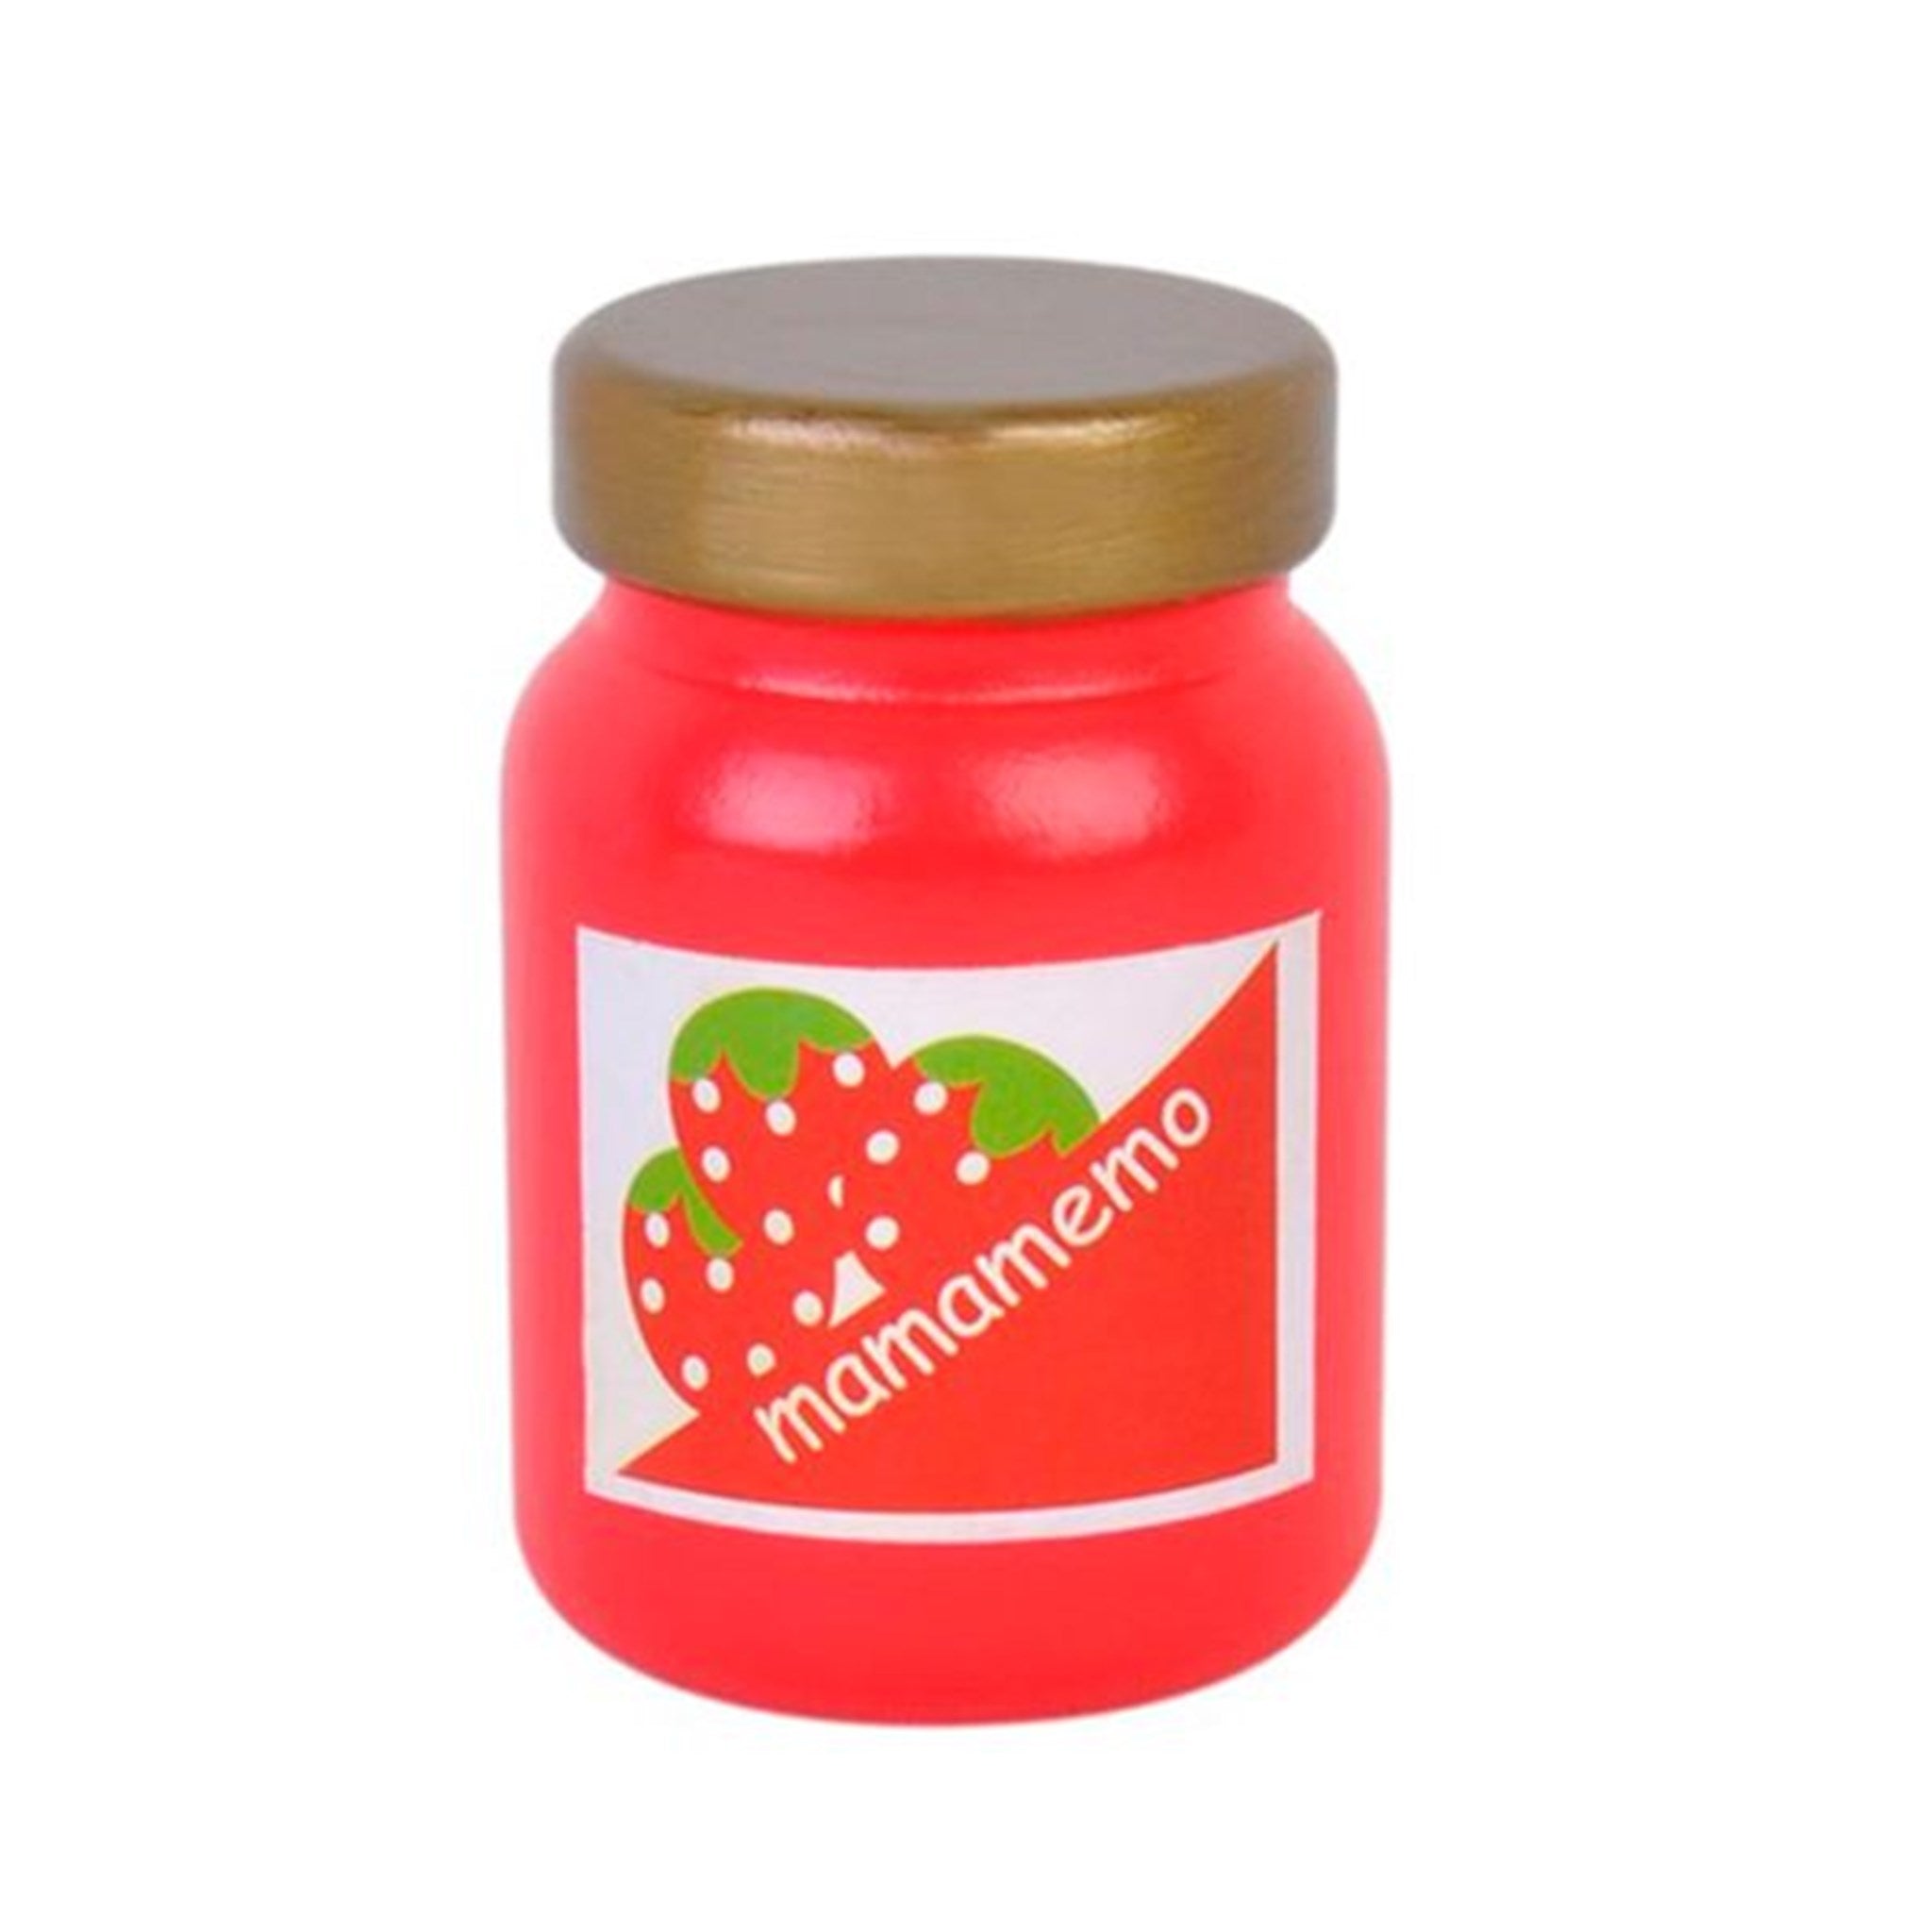 MaMaMemo Strawberry Jam